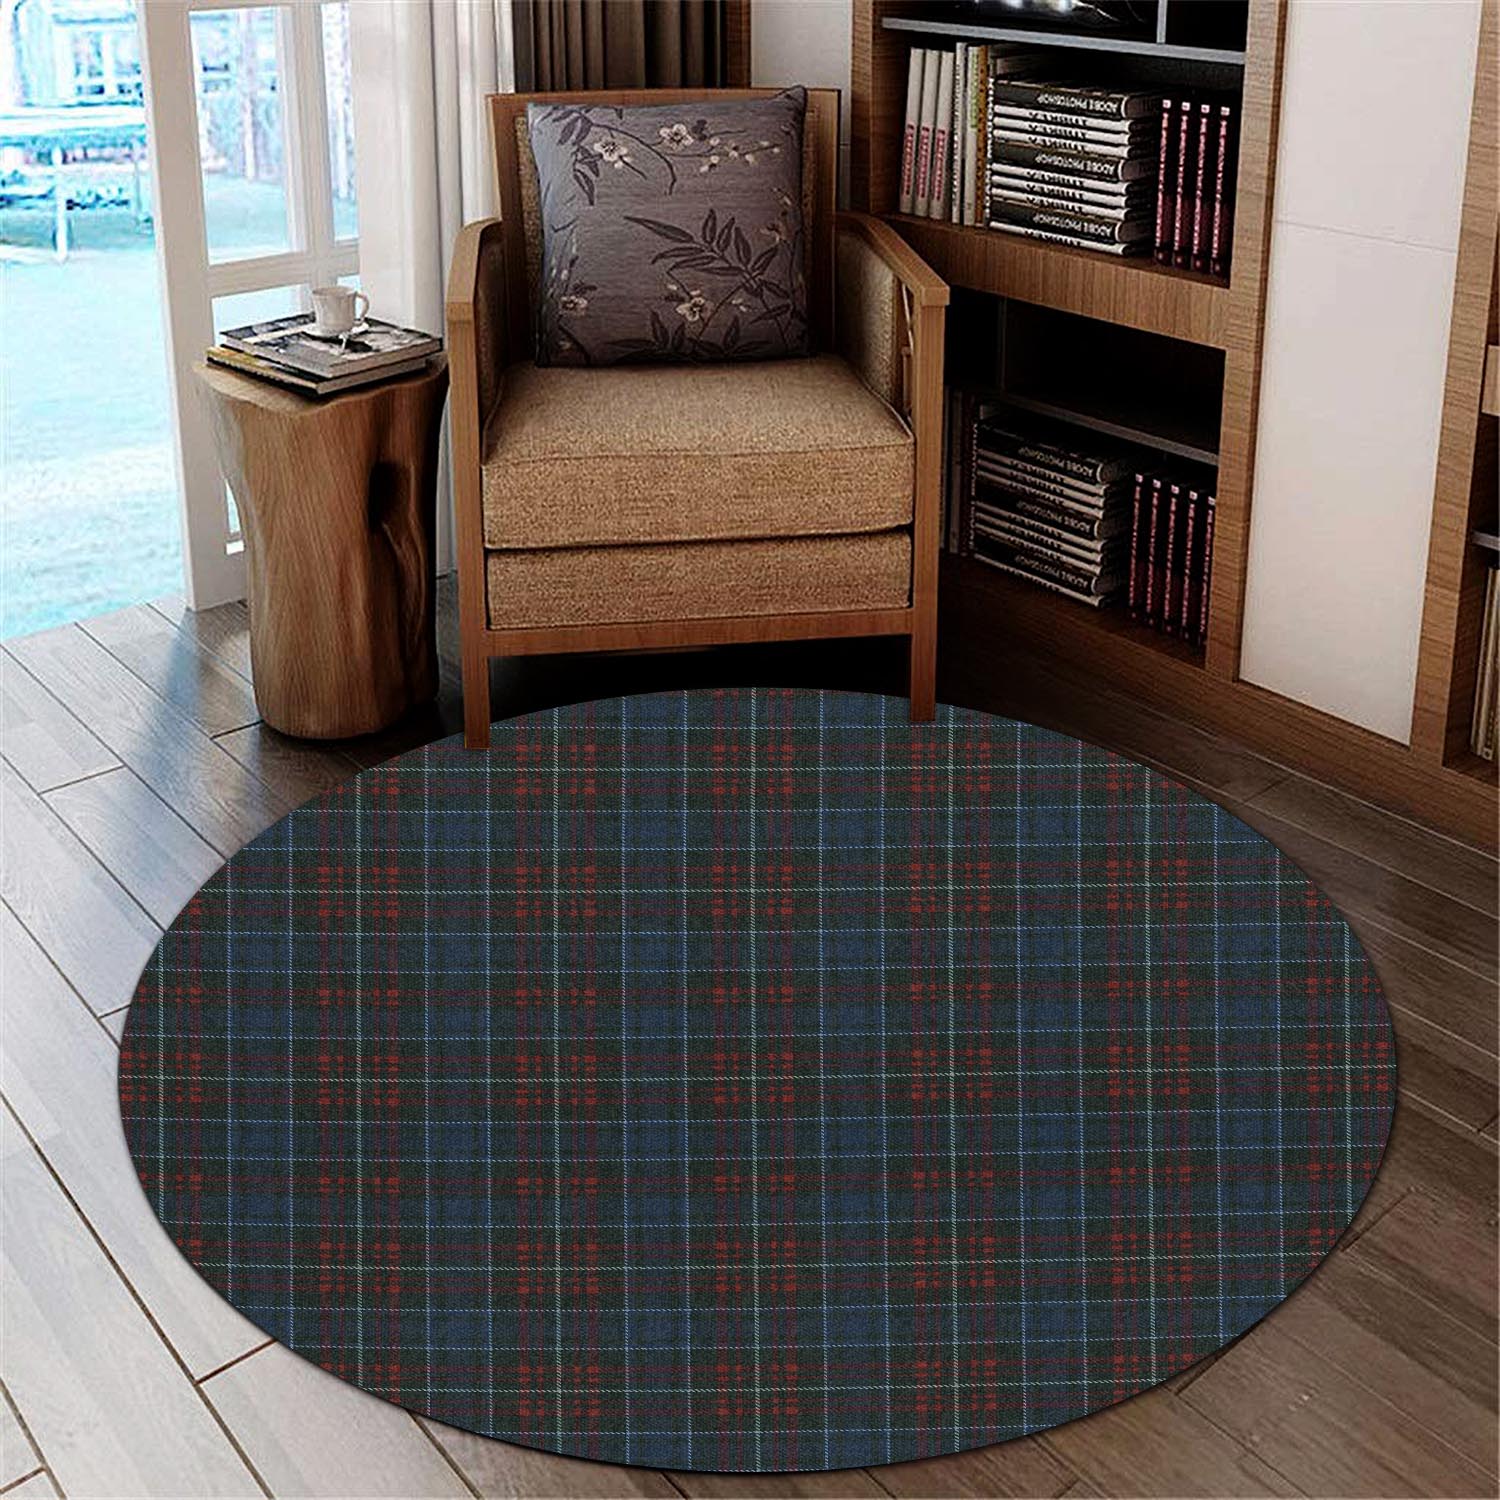 macconnell-tartan-round-rug